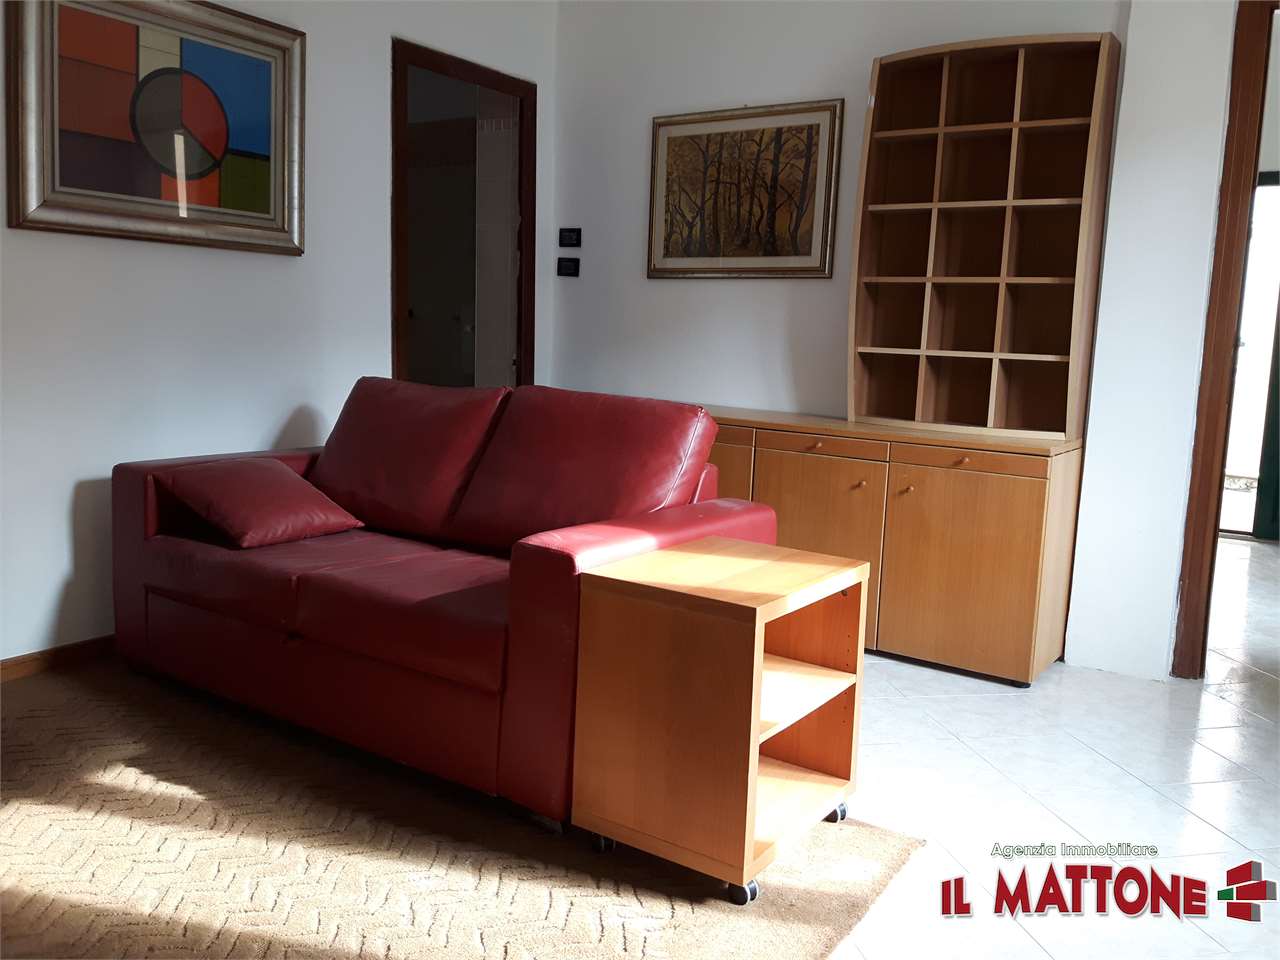 Appartamento in vendita a Mignanego, 4 locali, zona Località: Vetrerie, prezzo € 45.000 | PortaleAgenzieImmobiliari.it